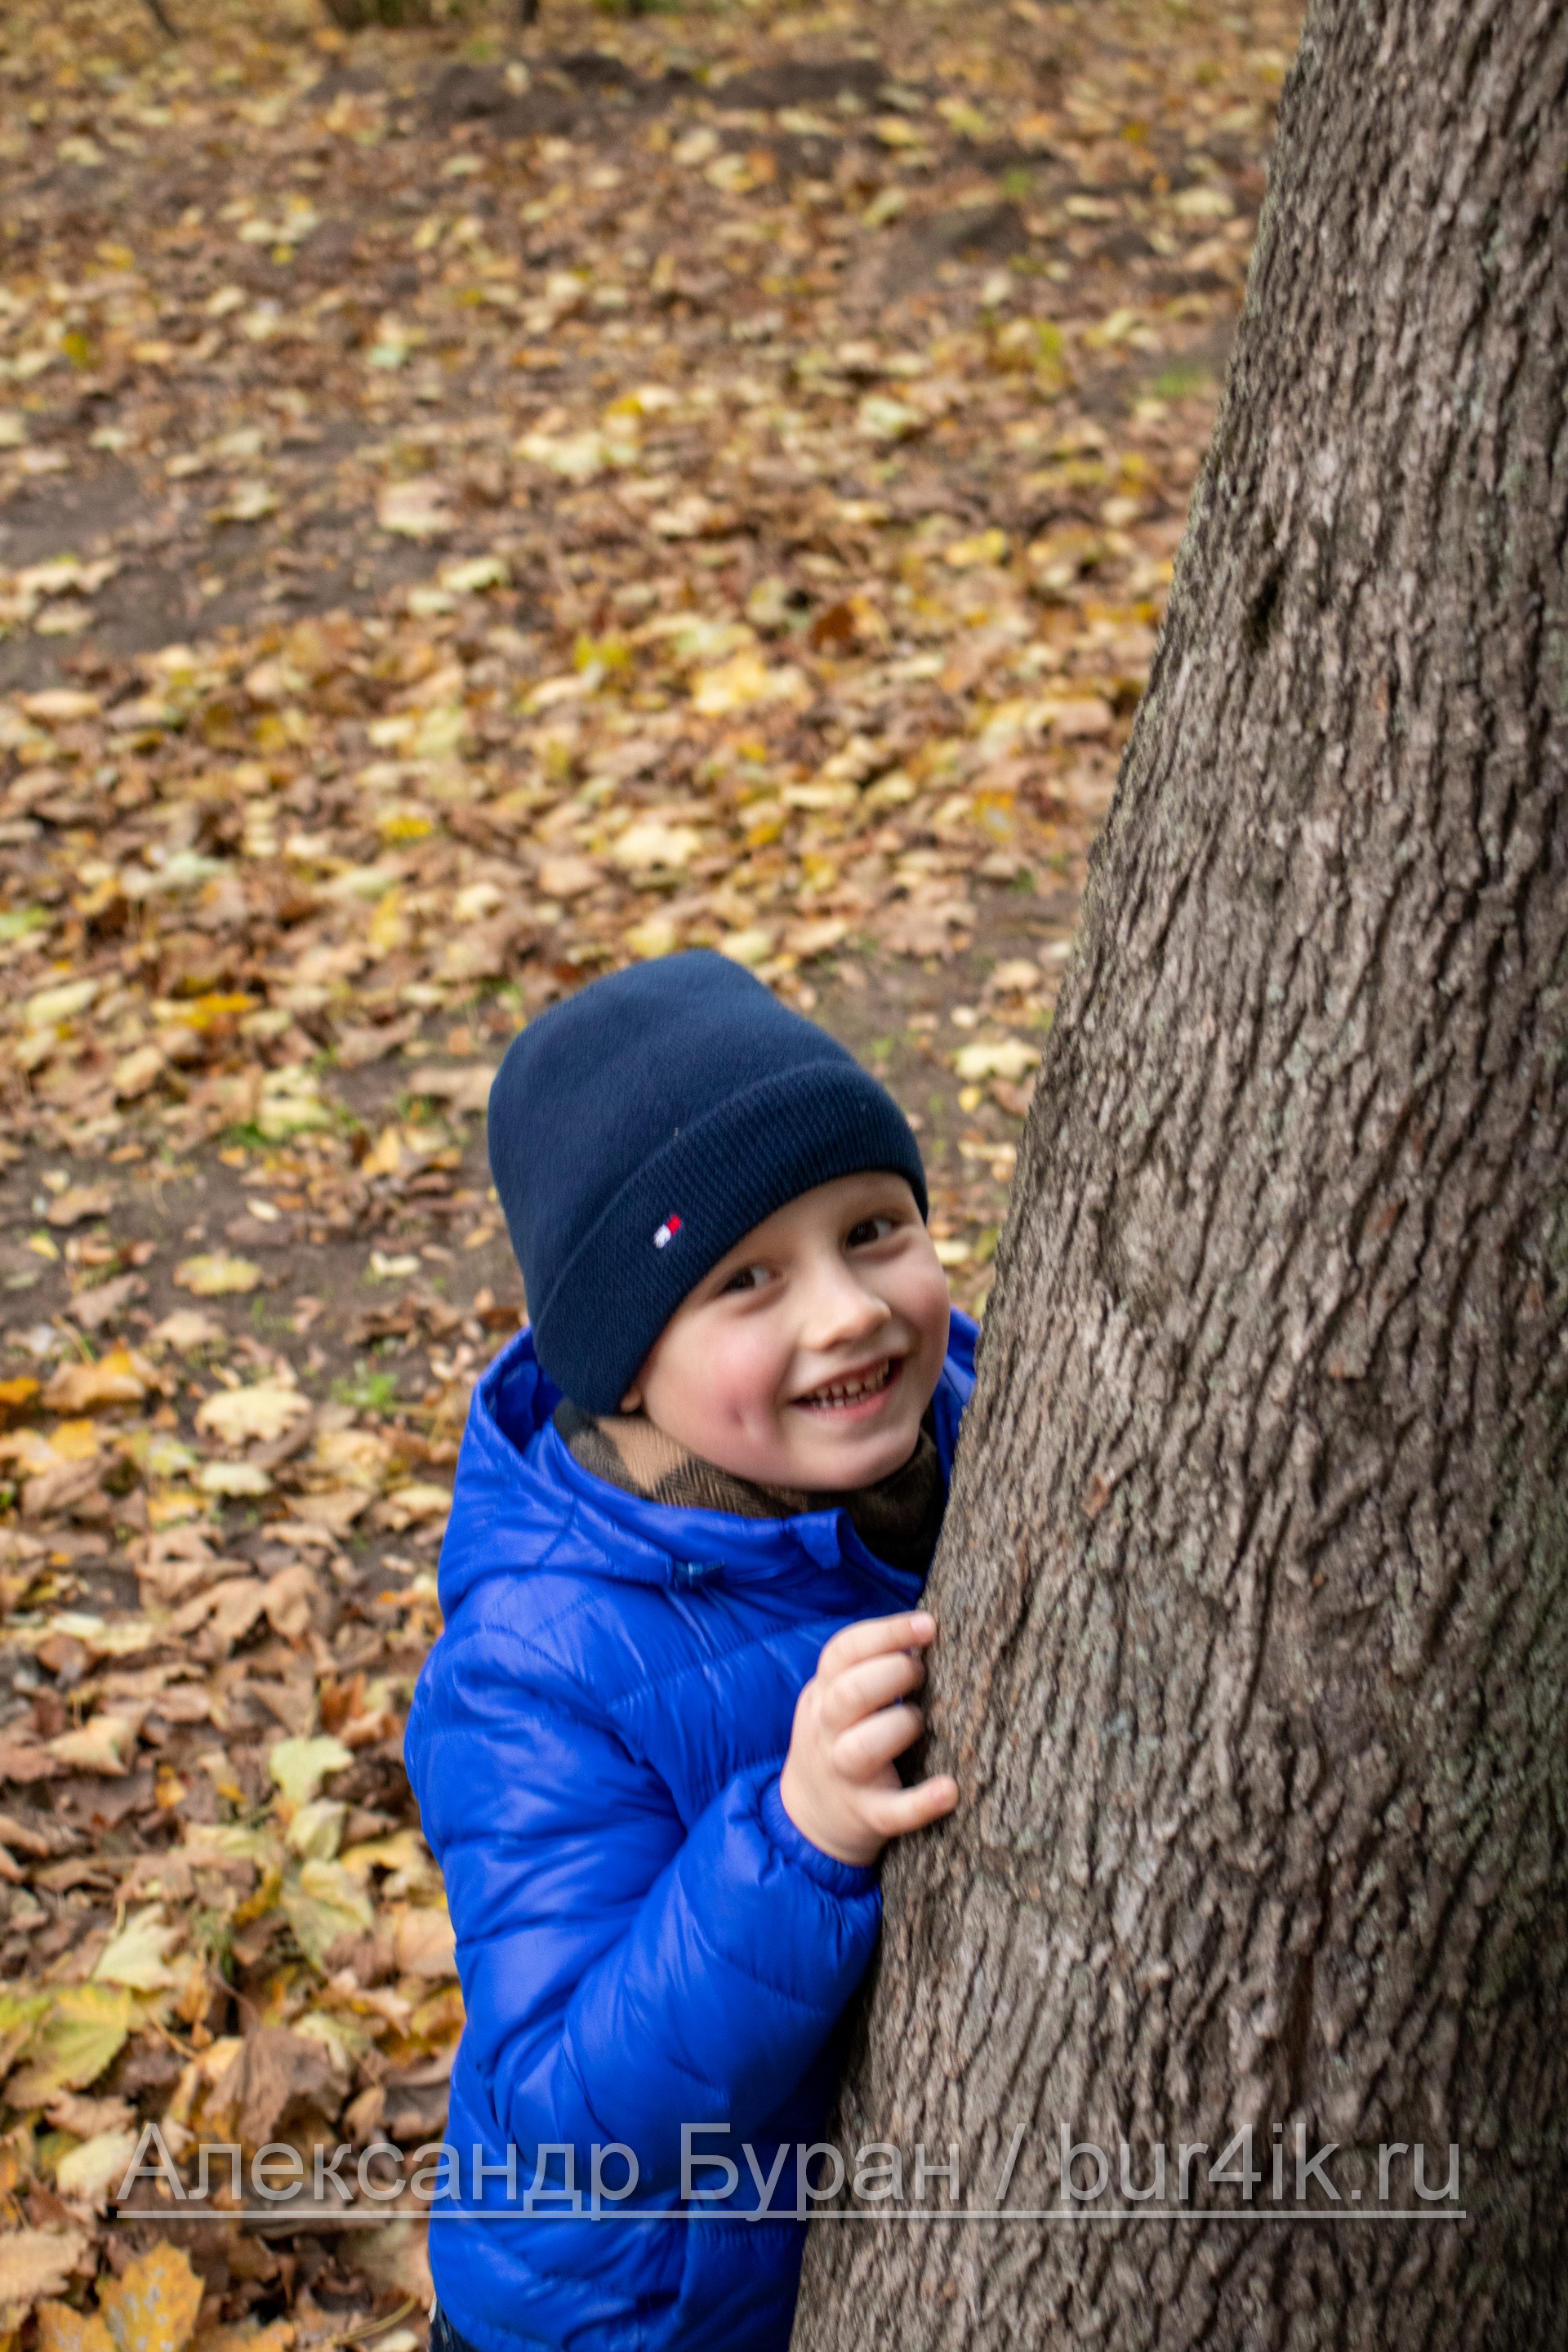 Мальчик прячется за деревом в осеннем парке